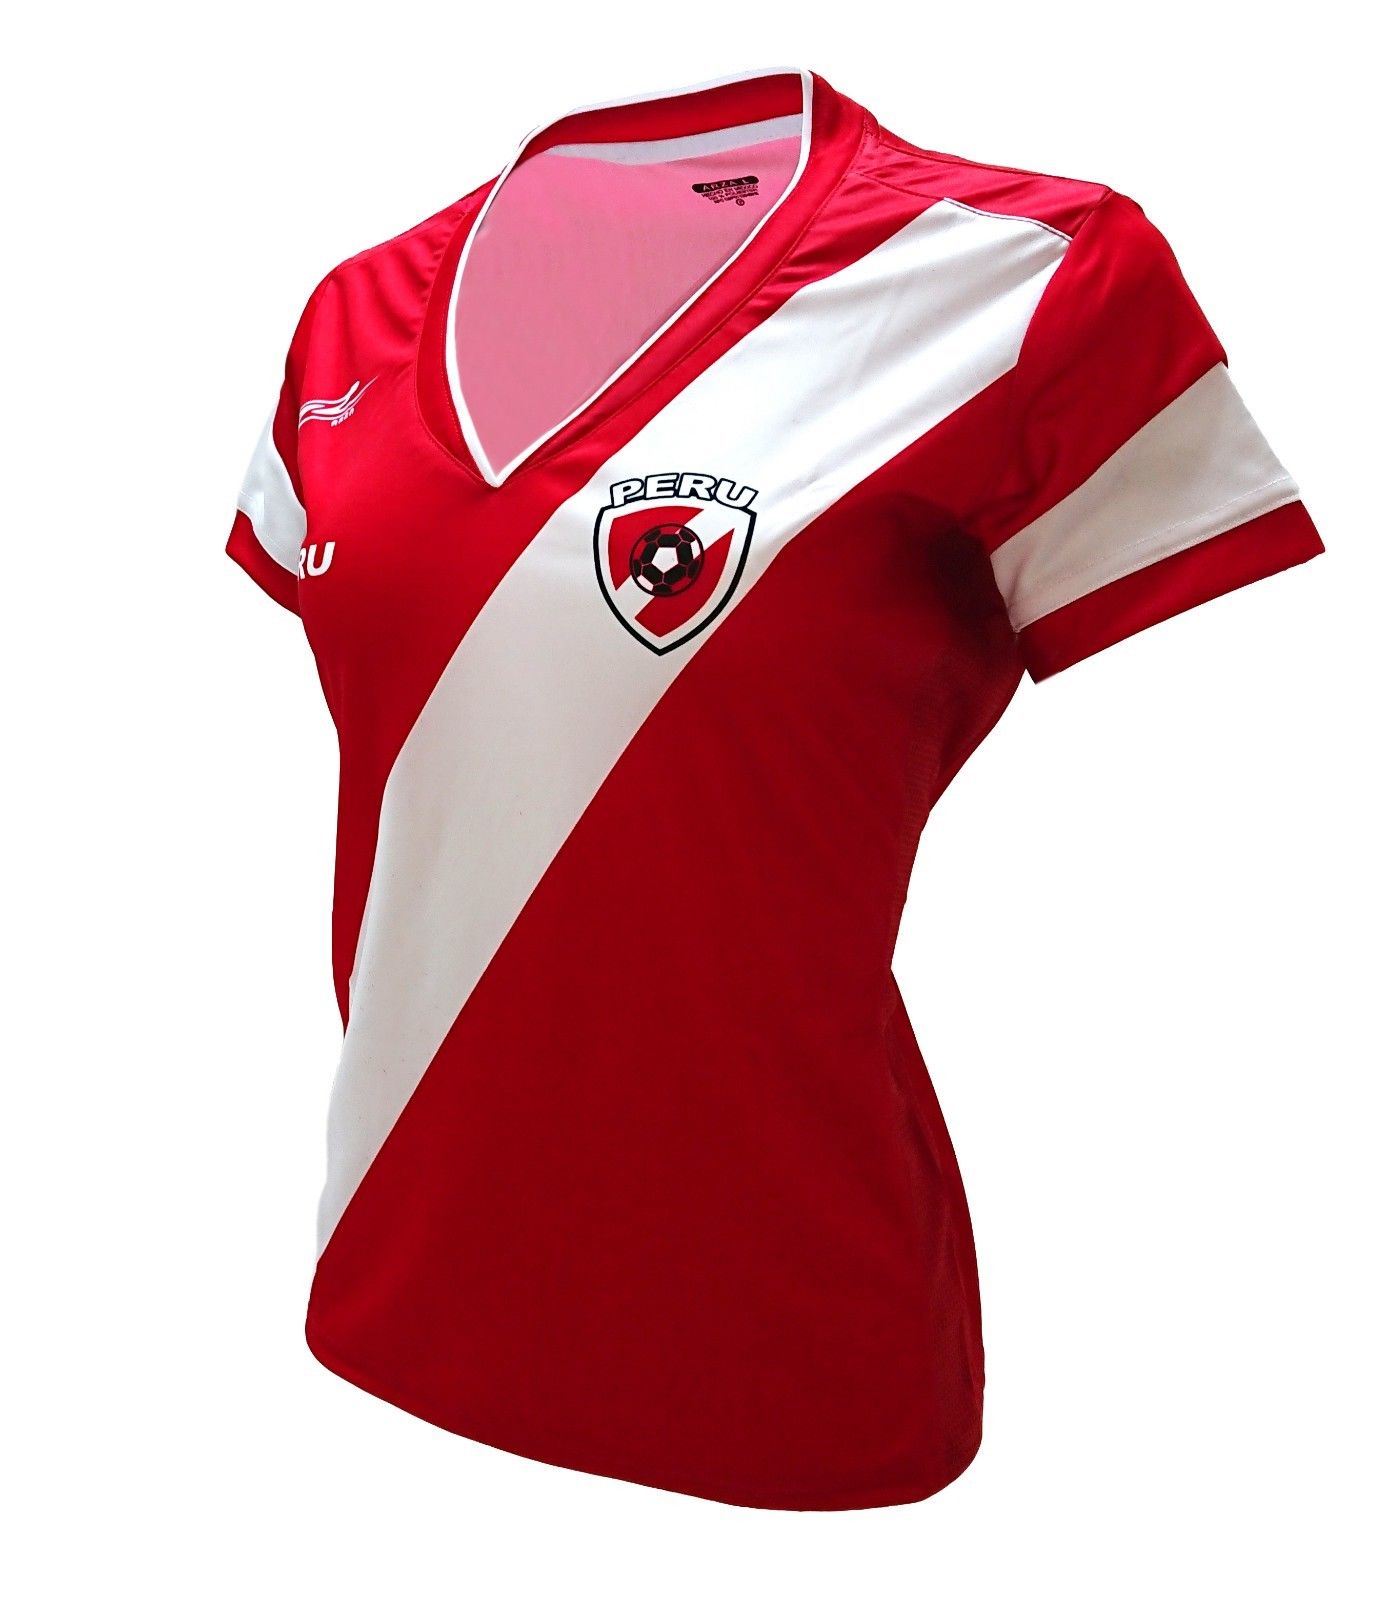 peru women's soccer jersey